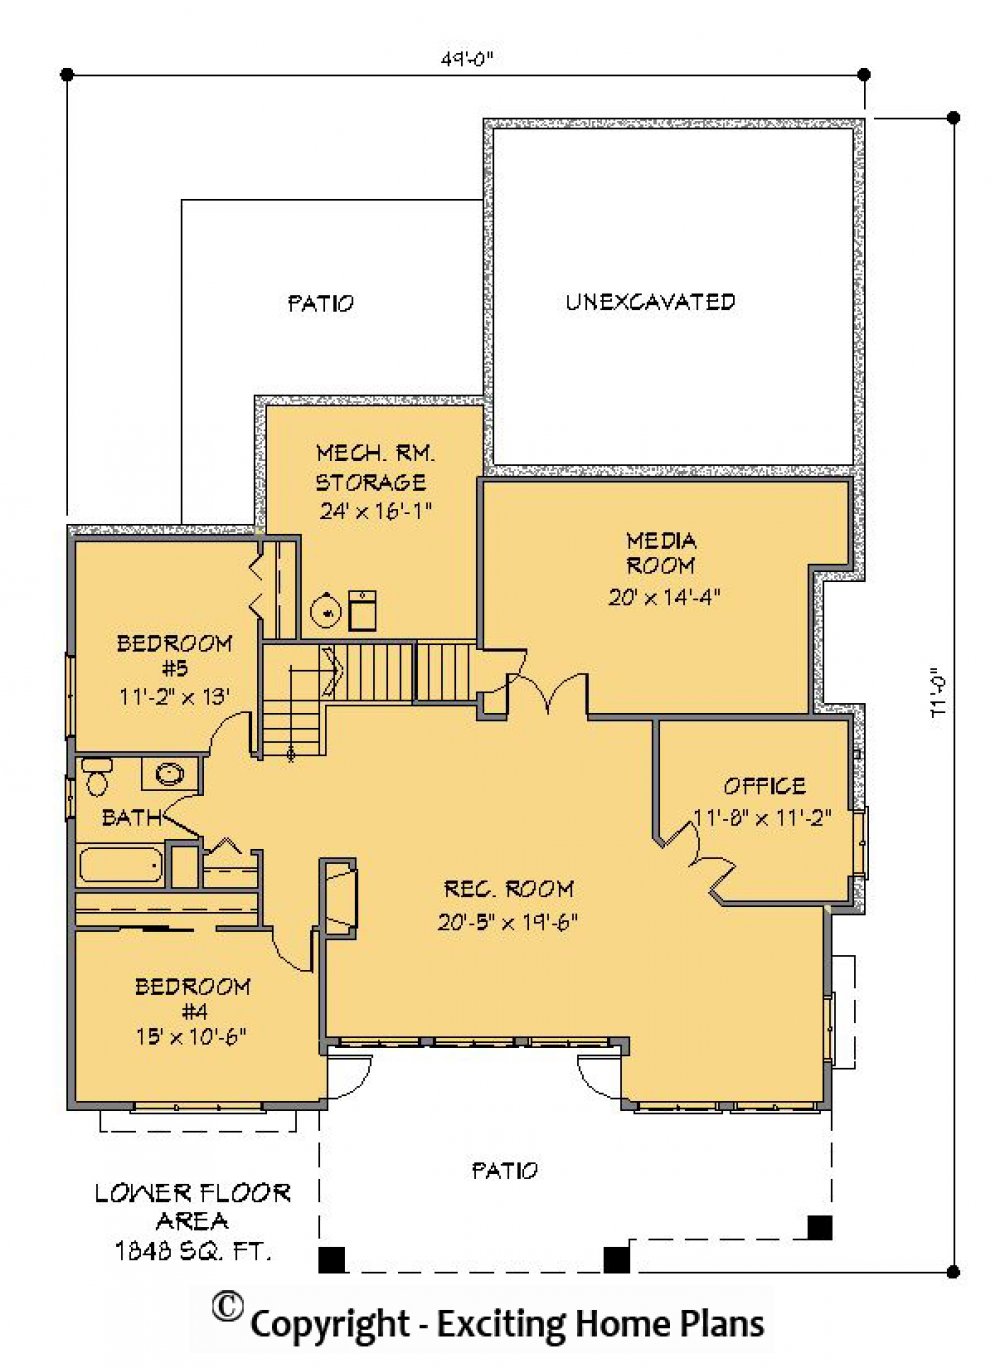 House Plan E1195-10 Lower Floor Plan